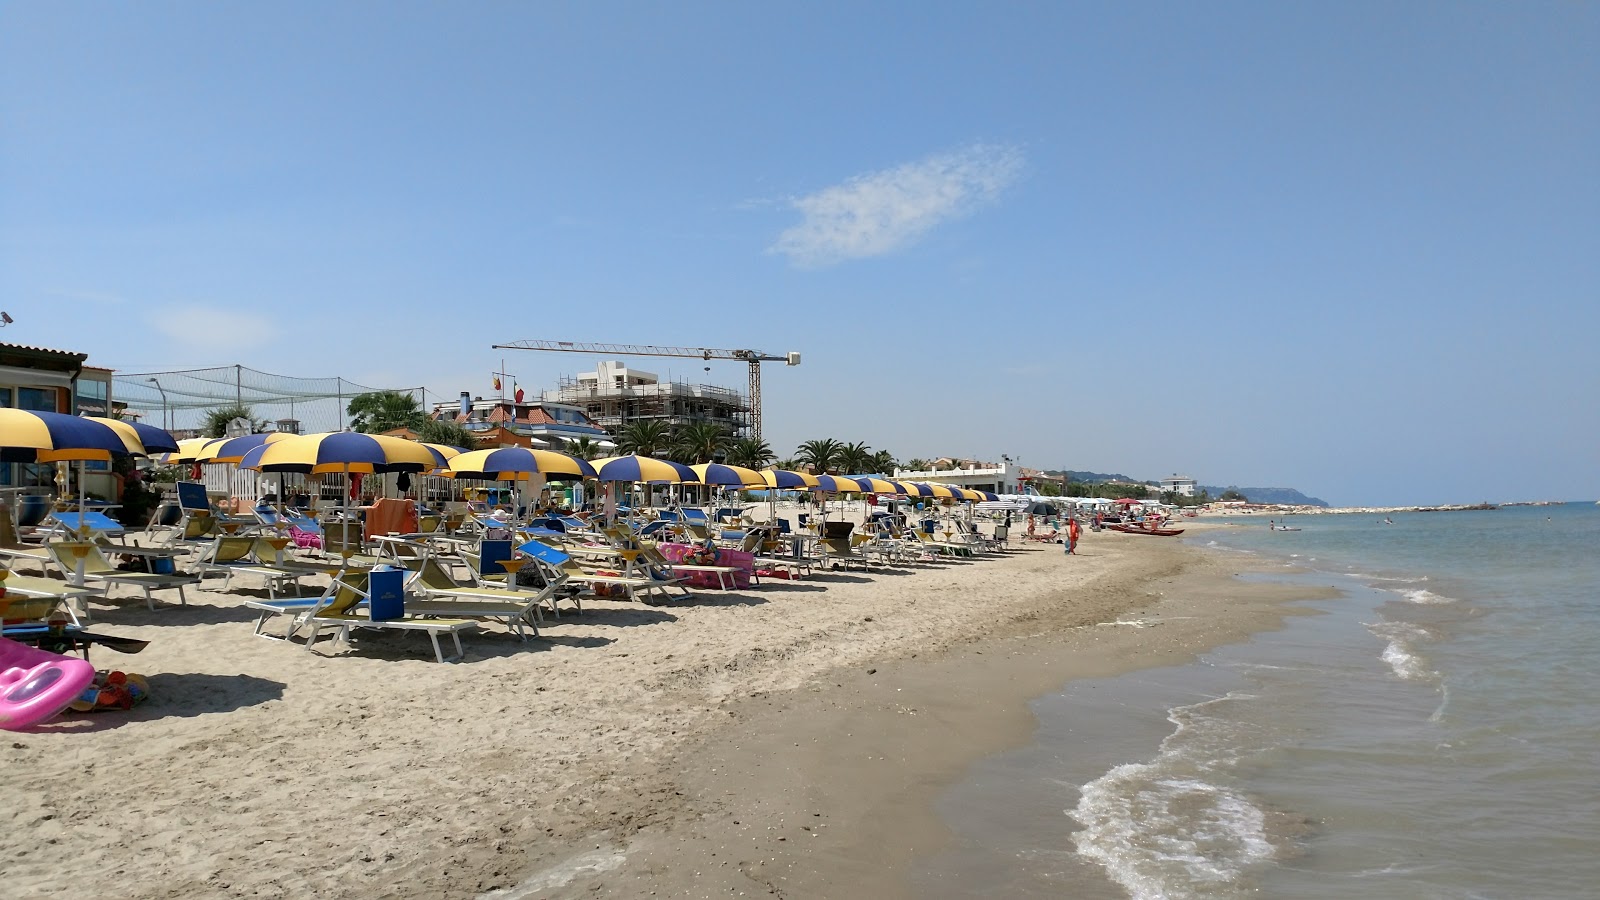 Cupra Marittima'in fotoğrafı plaj tatil beldesi alanı